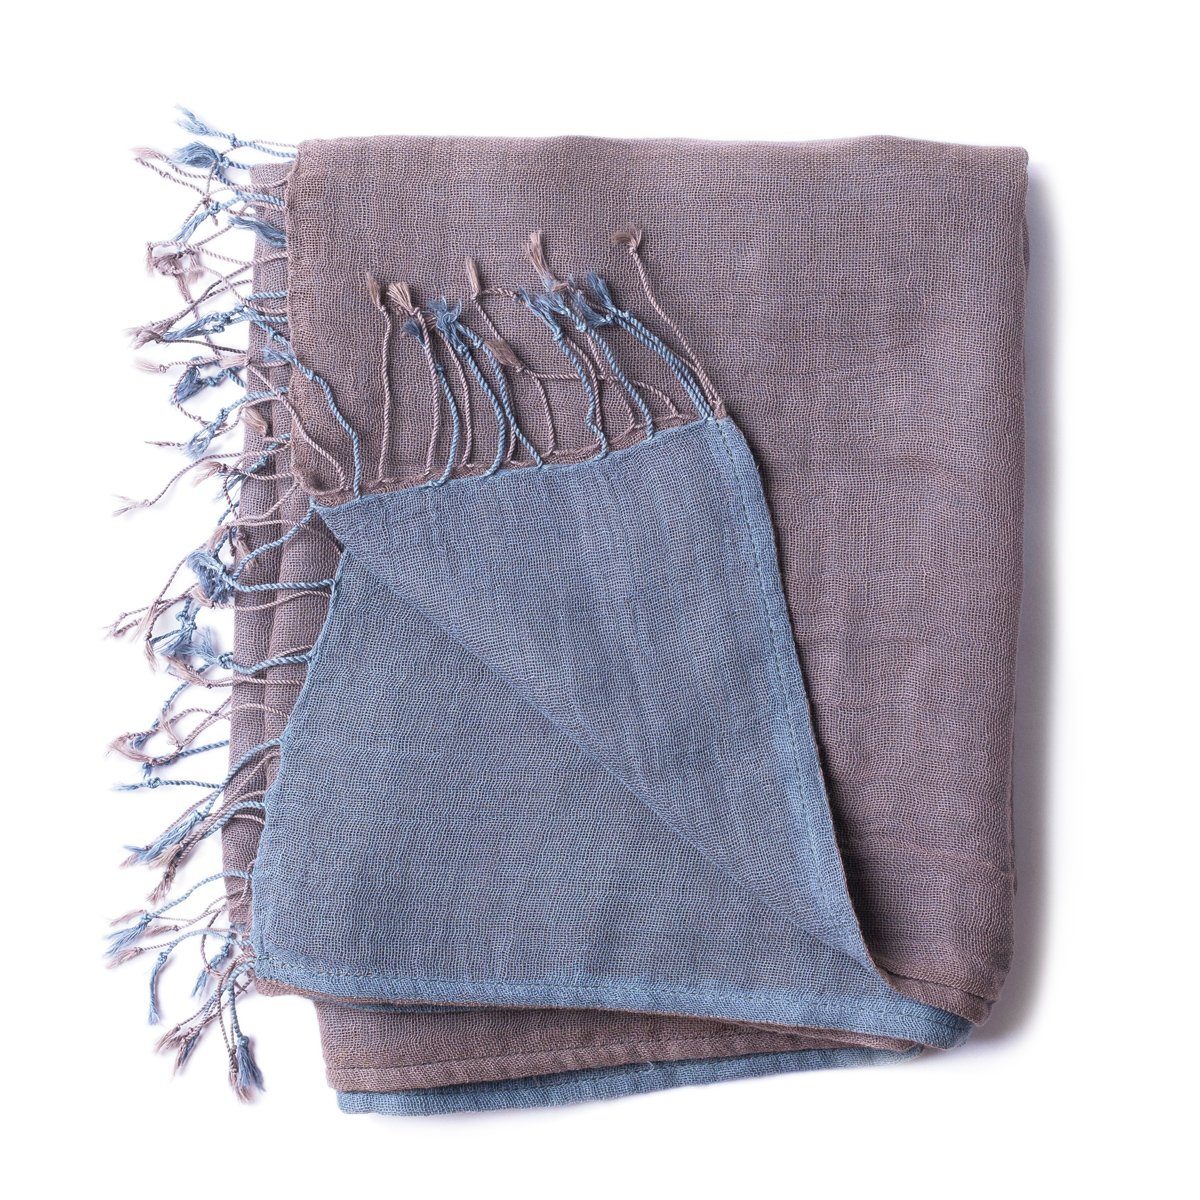 PANASIAM Halstuch elegantes Schultertuch zweifarbig auch als Schal oder Stola tragbar, in schönen farbigen Designs mit kleinen Fransen aus Baumwolle grau braun